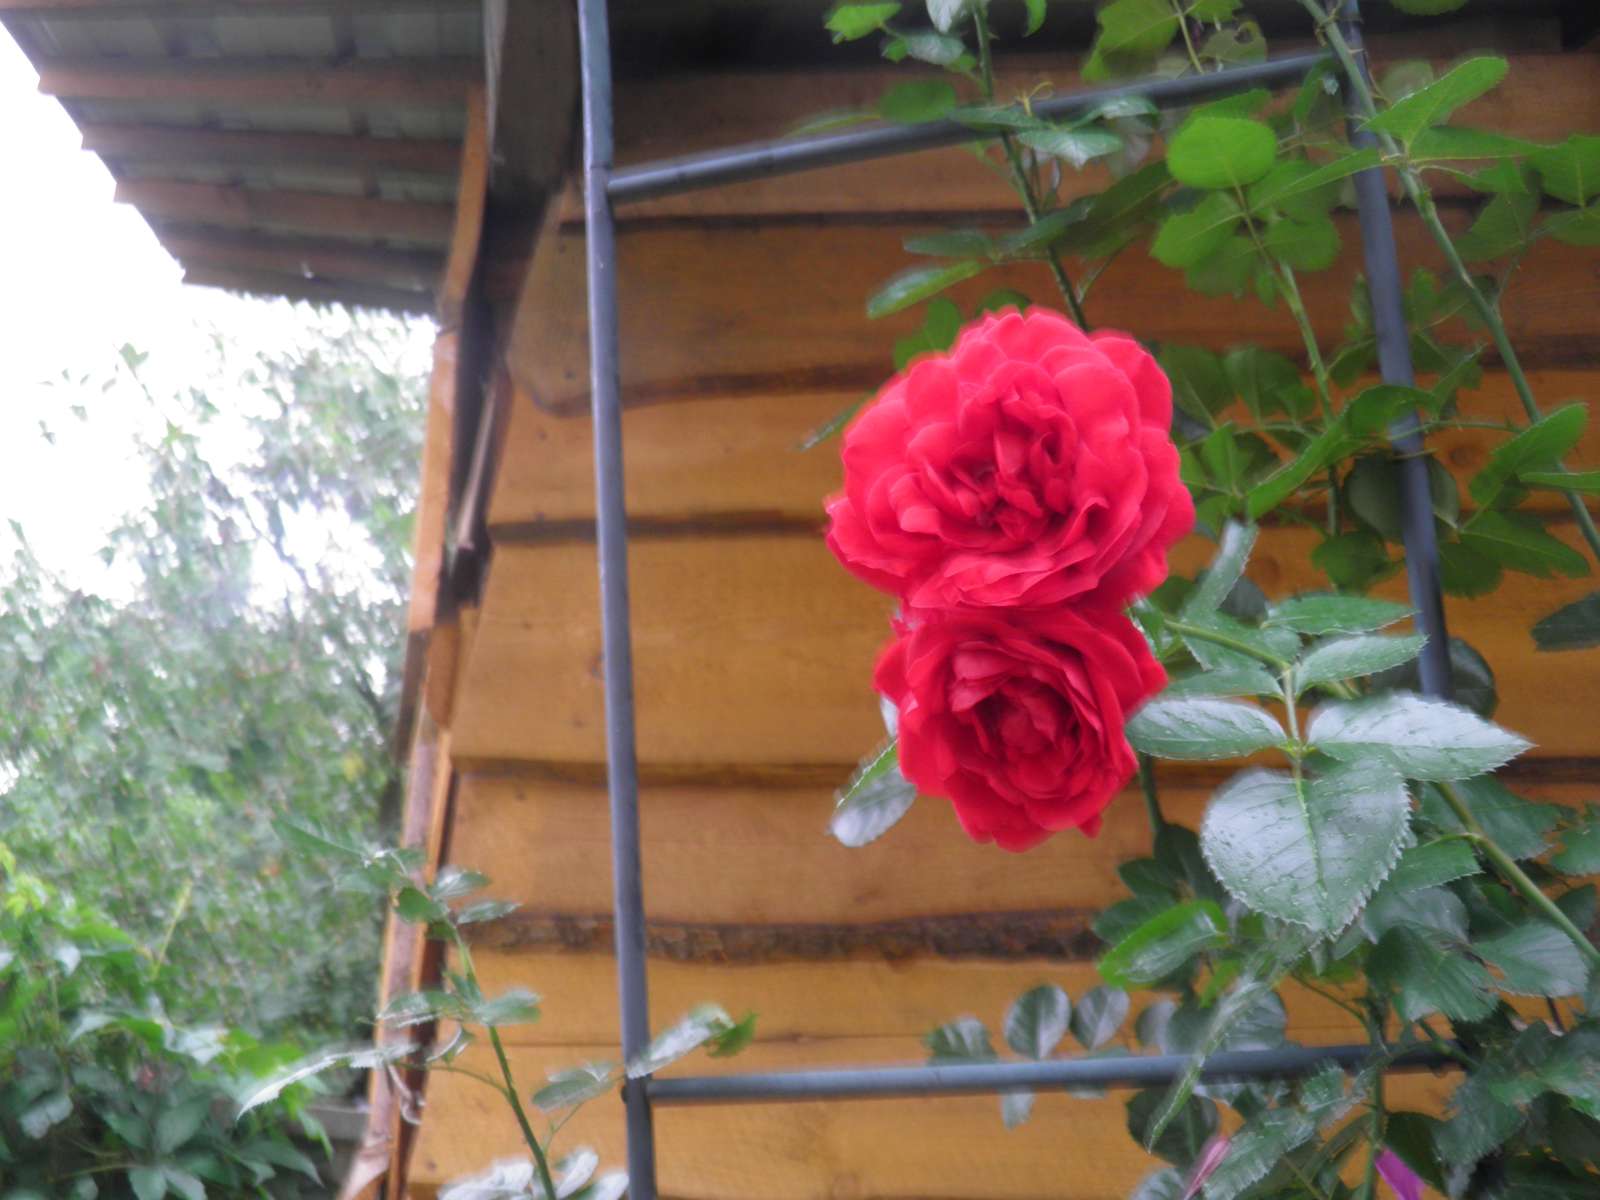 розови цветя онлайн пъзел